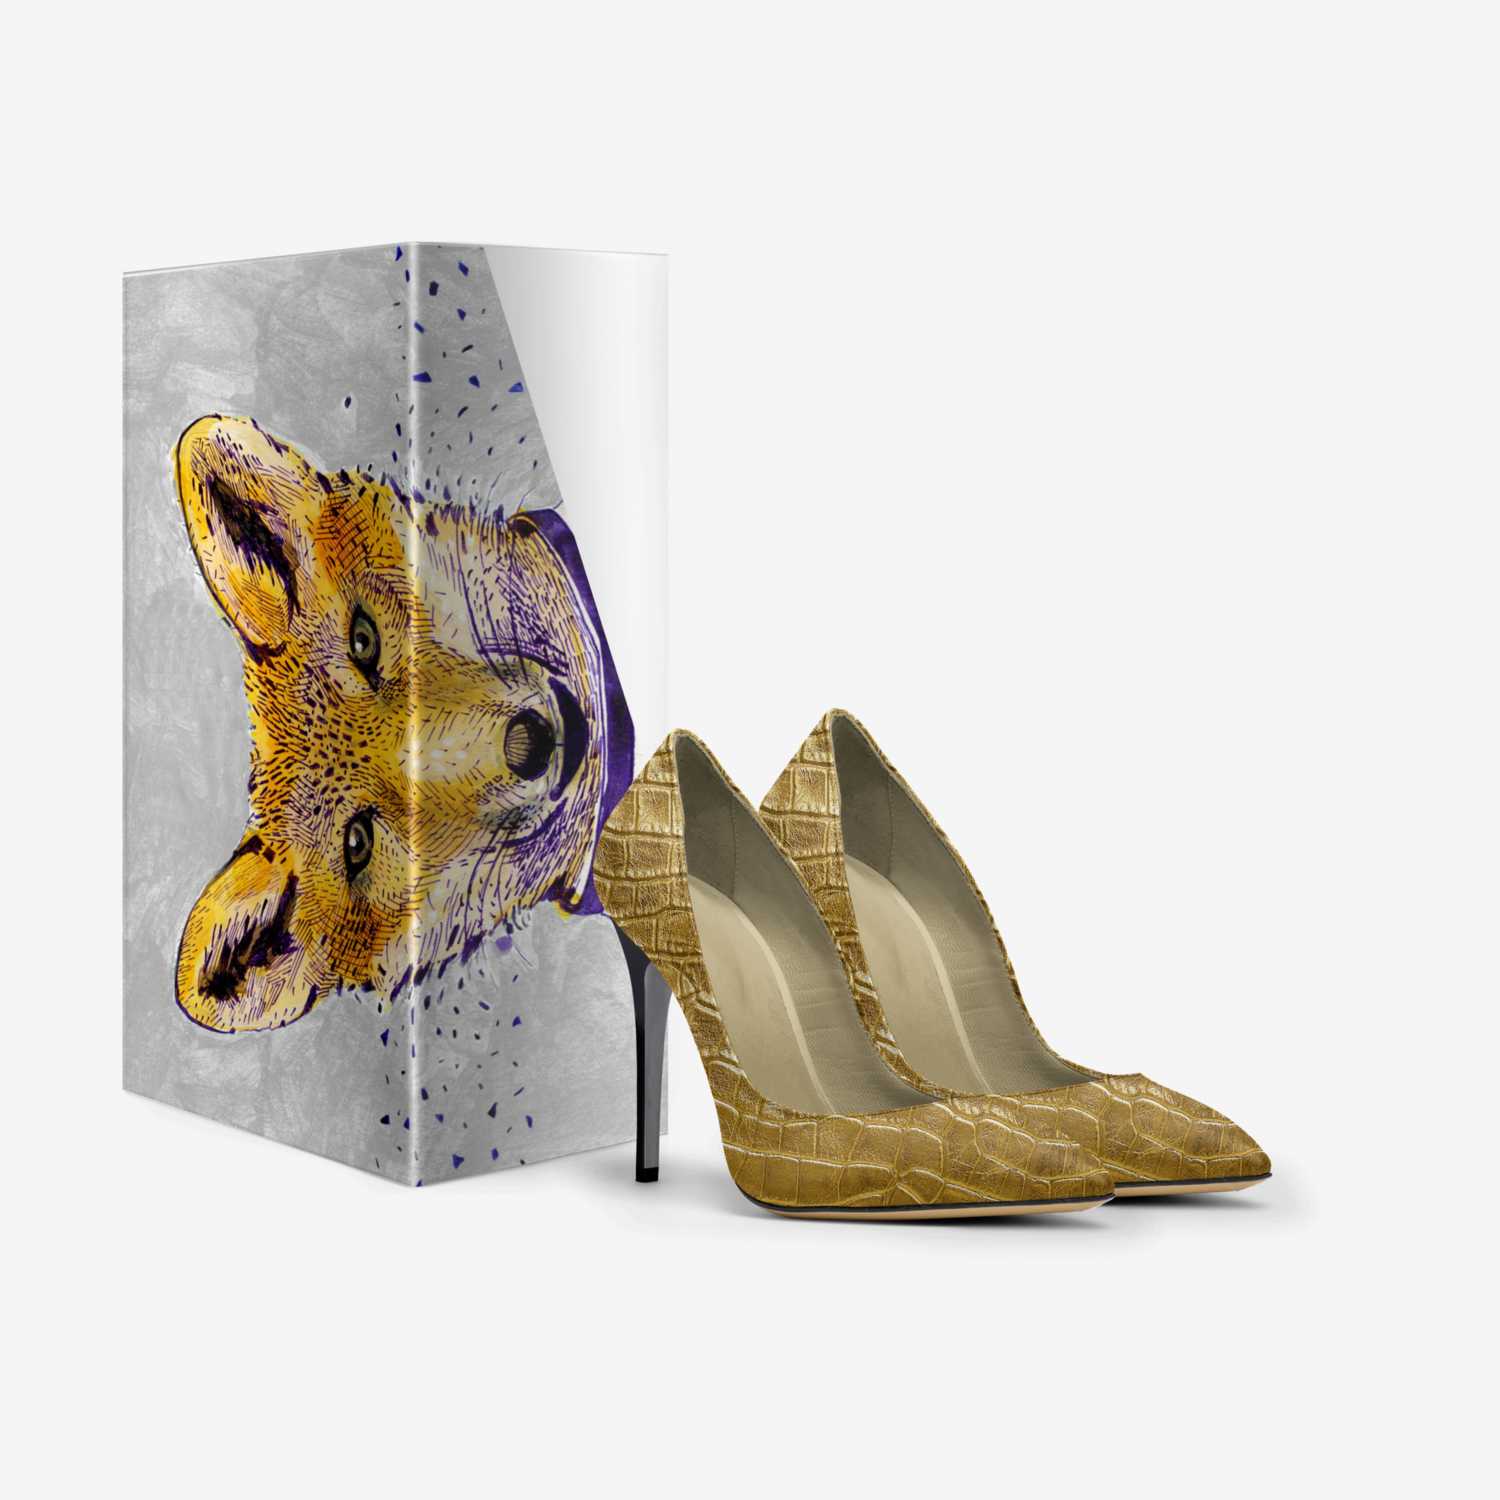 New Road ® custom made in Italy shoes by Paulina Jastrzebska | Box view